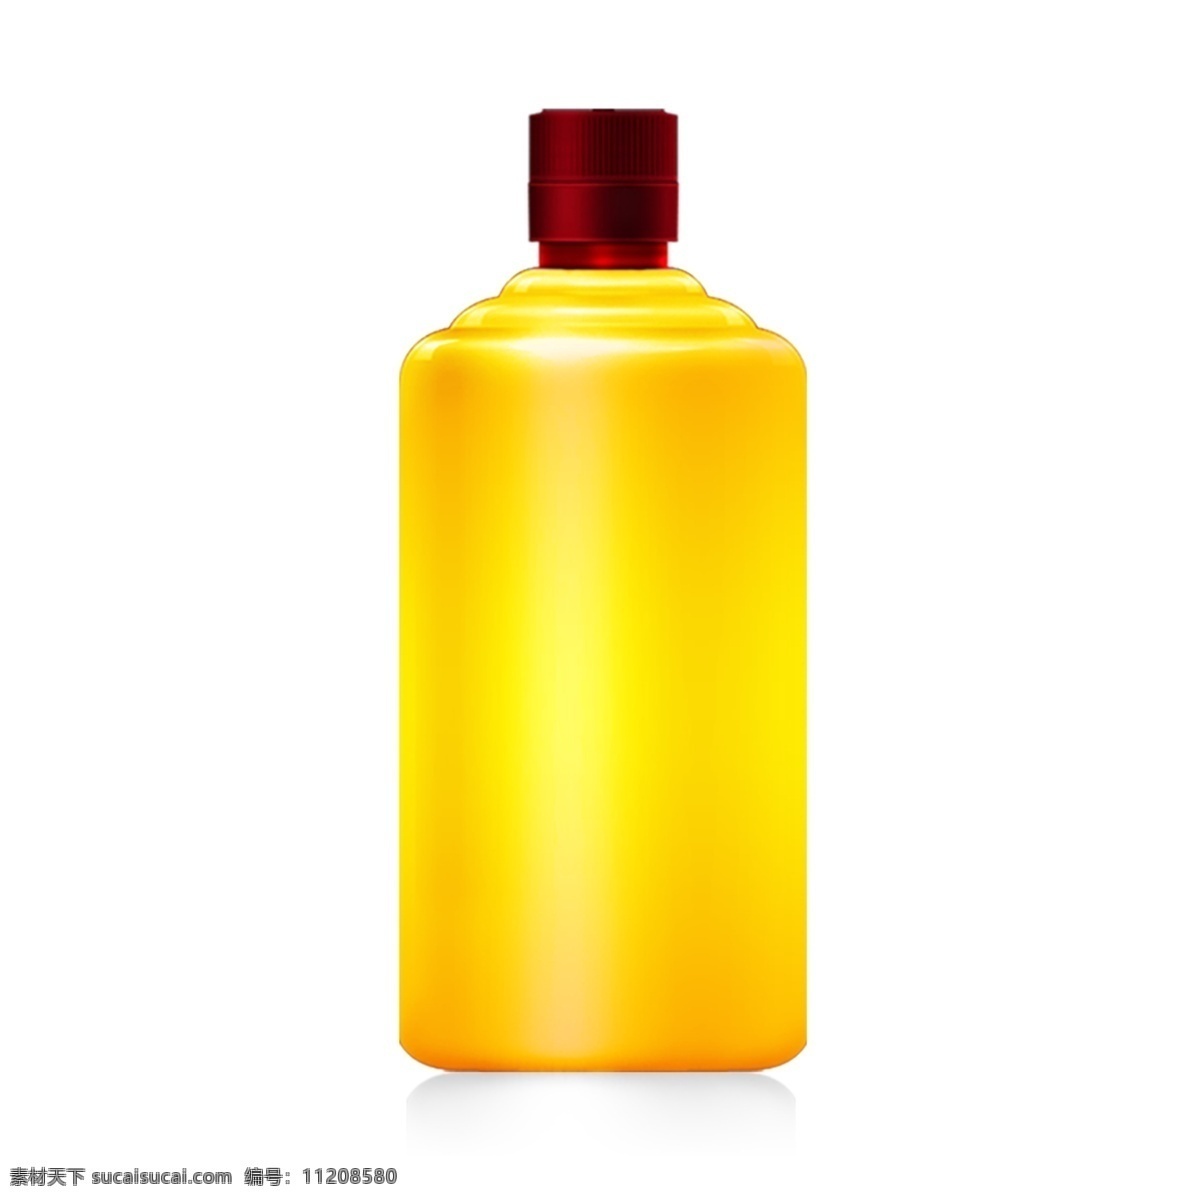 茅 型 瓶 酒瓶 立体 酒类 效果图 金色 模板 茅型 效果 瓶子